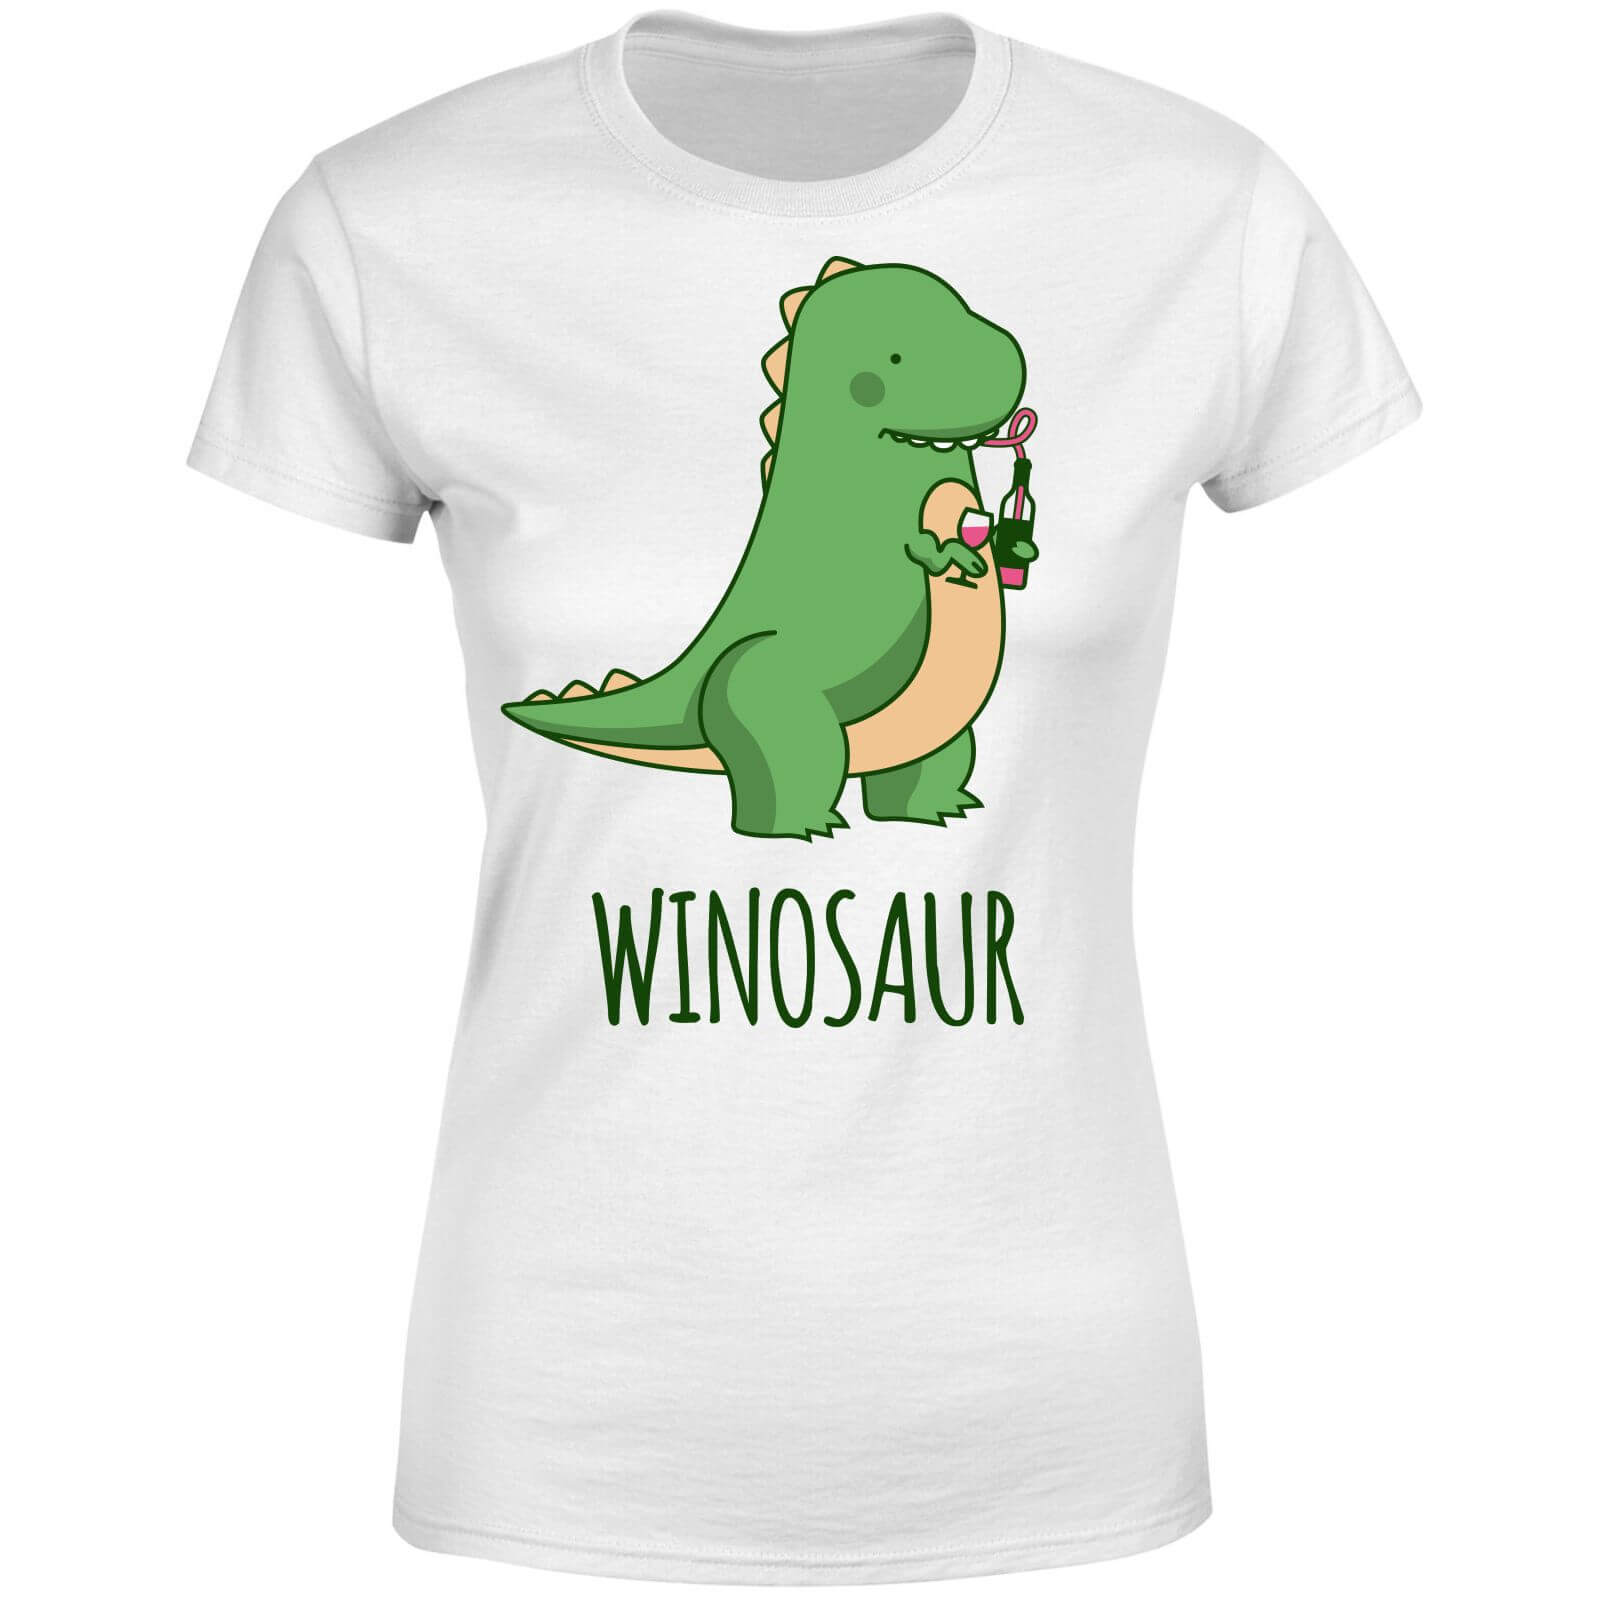 Winosaur Women's T-Shirt - White - S